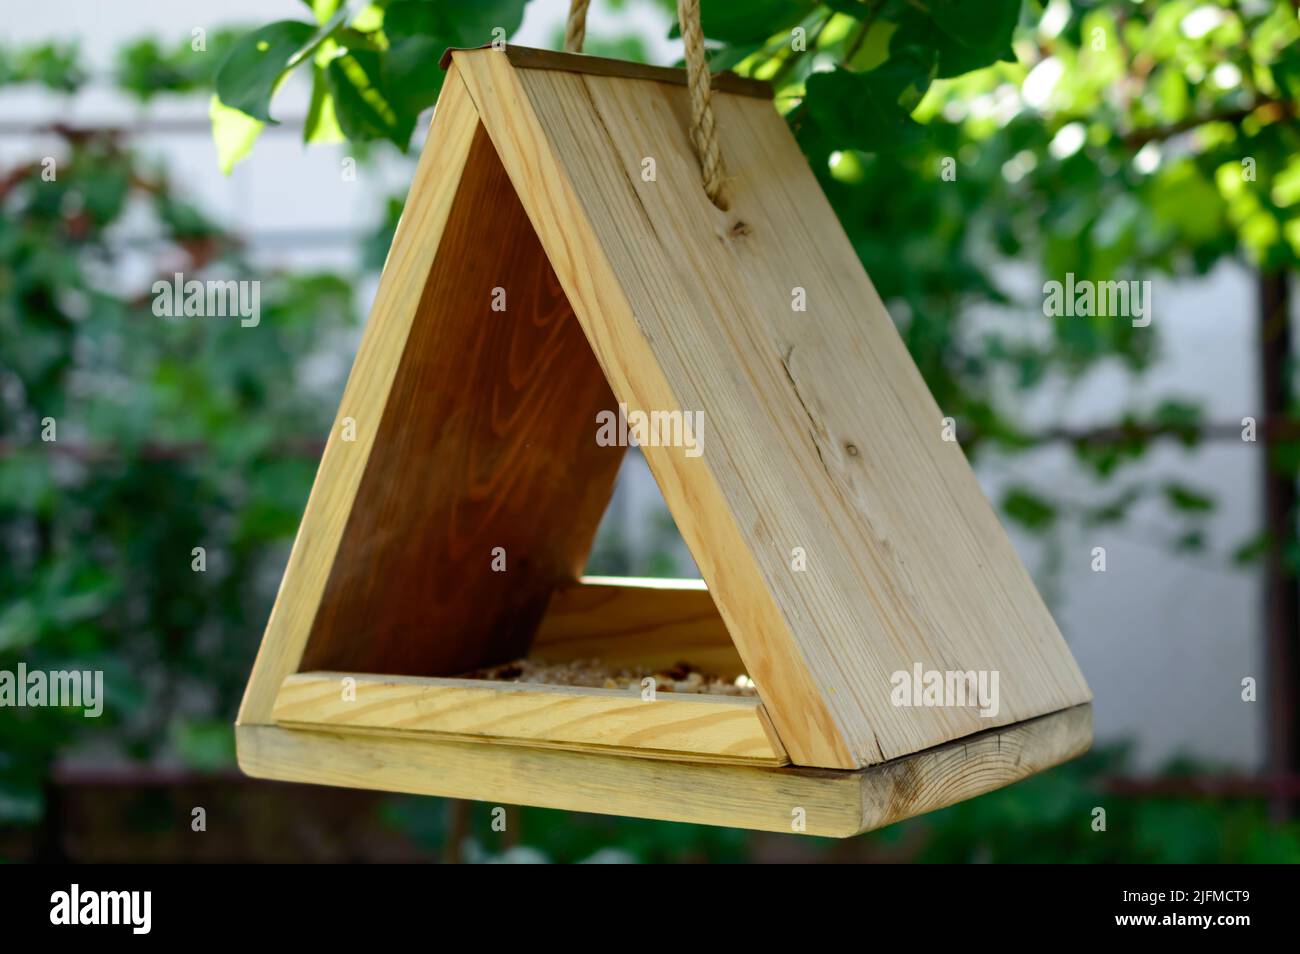 Piccola birdhouse in legno è appesa su una corda naturale sull'albero. In attesa degli uccelli. Birdhouse fai da te. Immagine di sfondo. Foto Stock